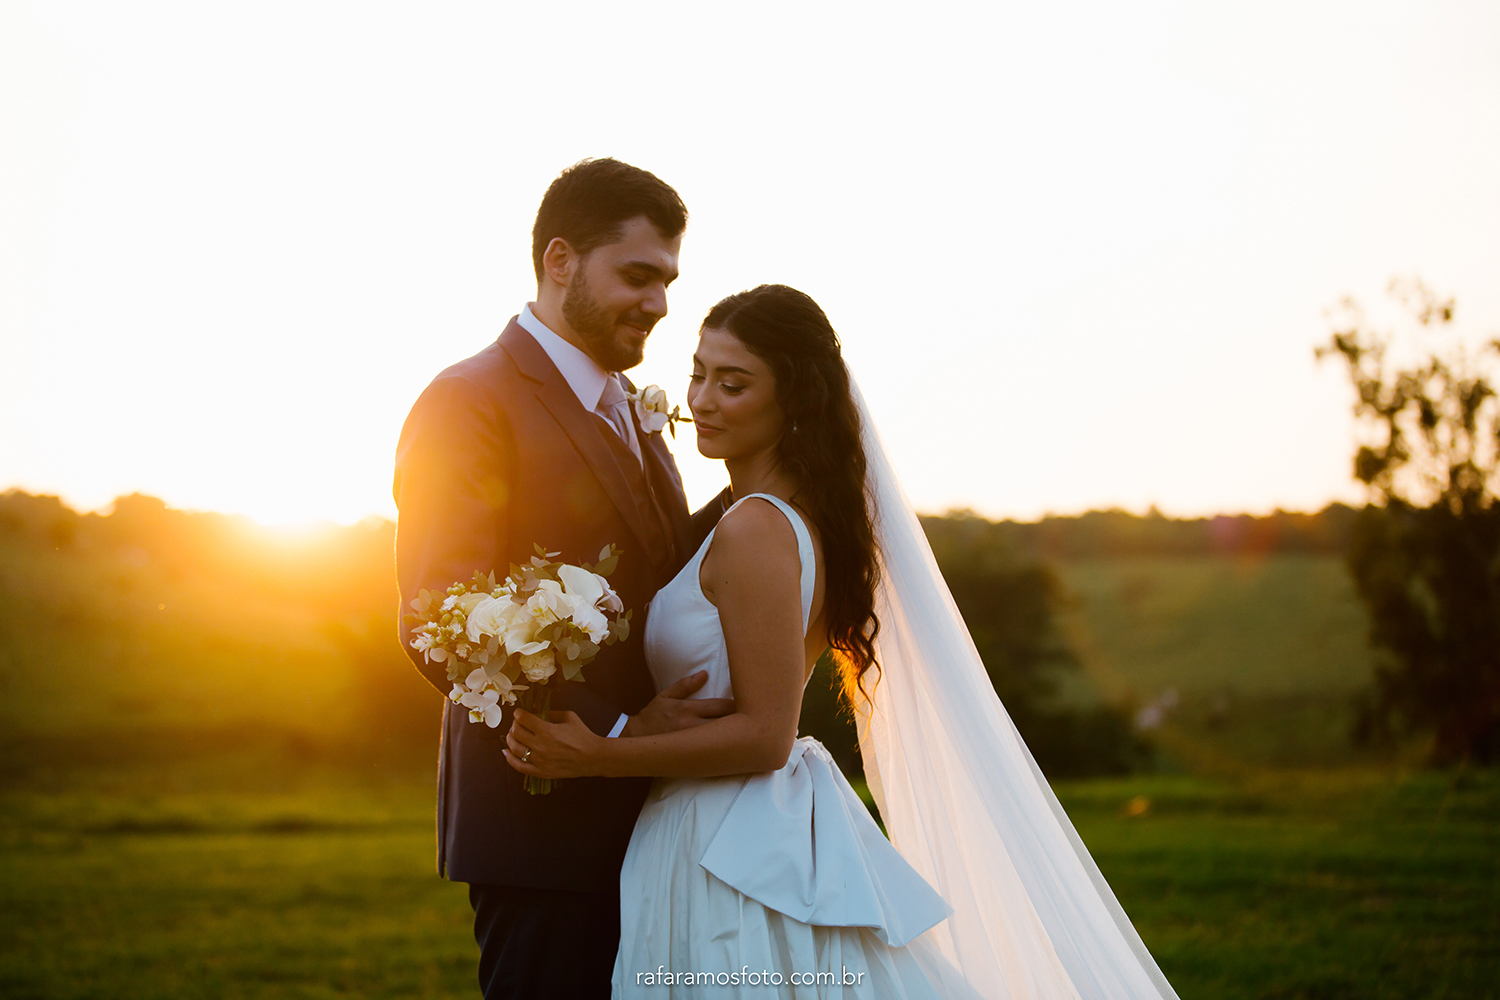 Beatriz e Vitor | Casamento bucólico em tons de verde e branco, por Rafa Ramos